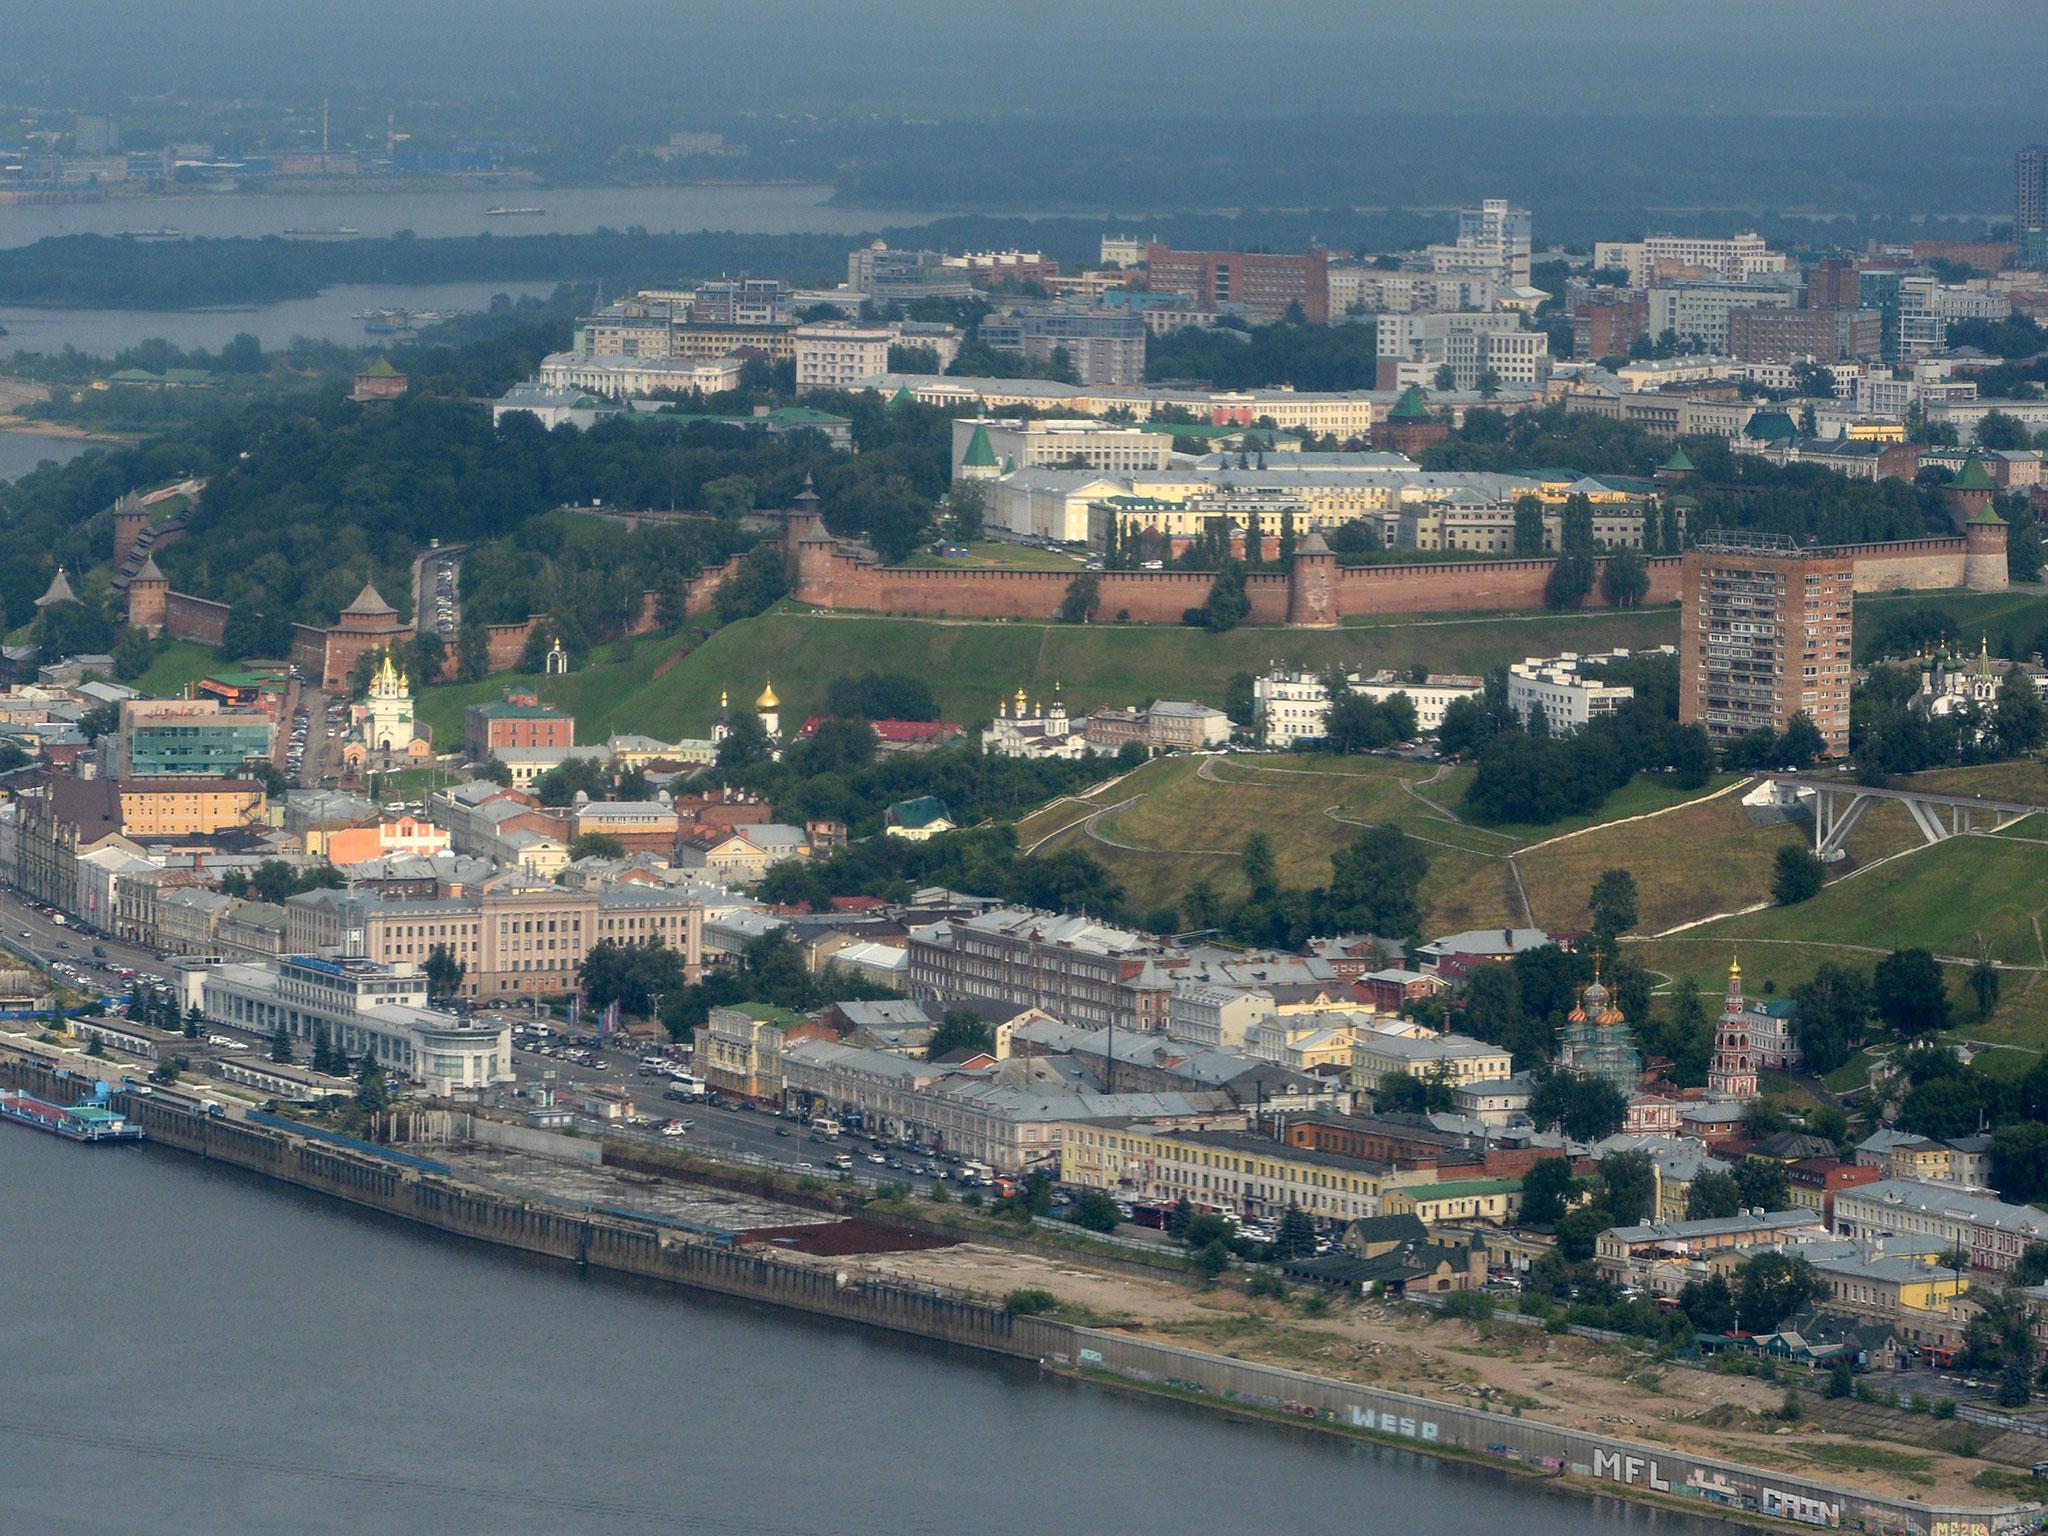 An aerial view of the city of Nizhny Novgorod